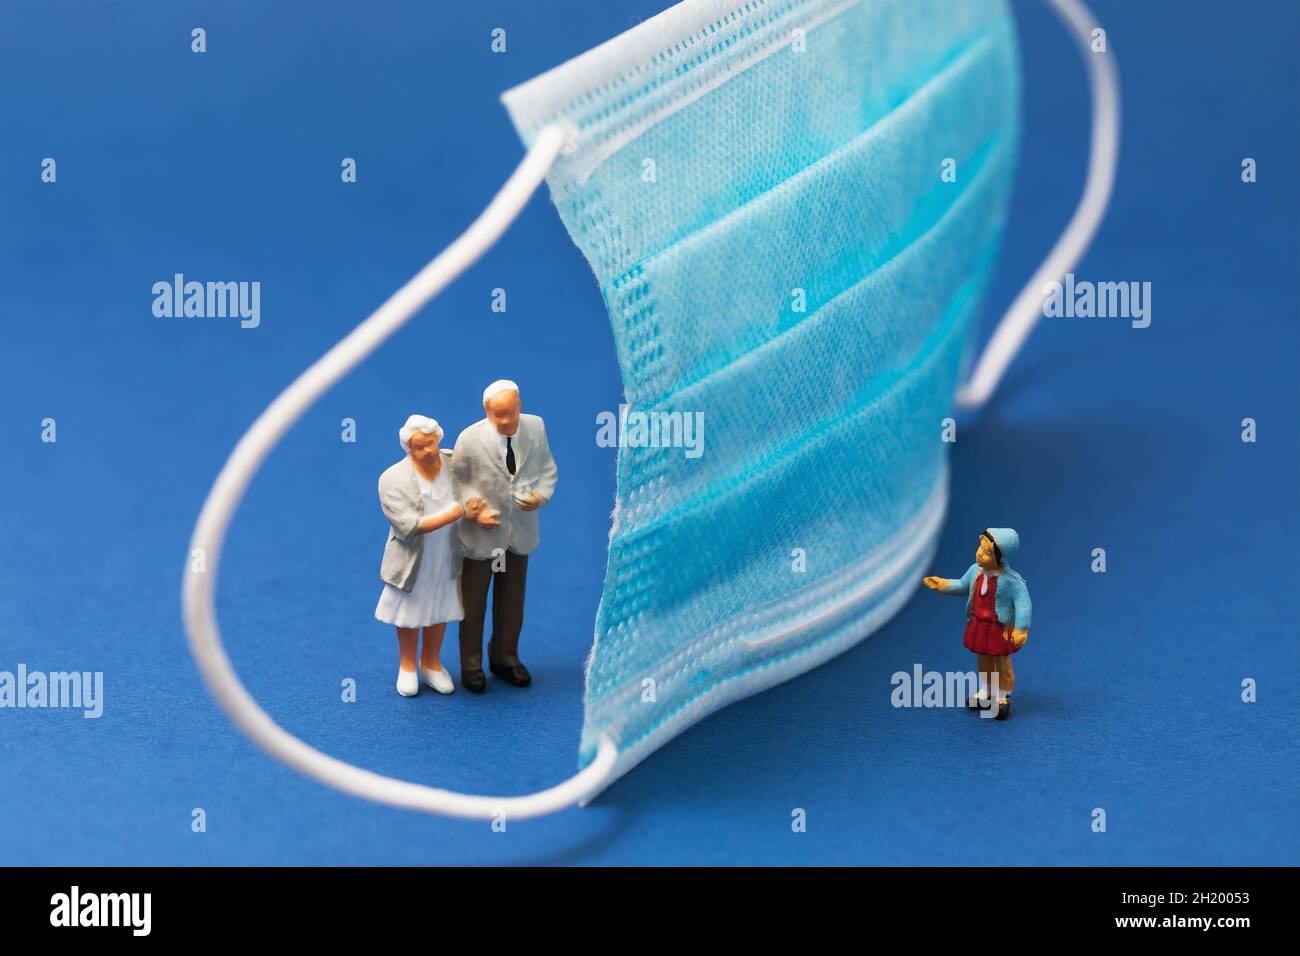 Maschera medica e persone su sfondo blu, concetto sul tema della distanza sociale, uomini giocattolo di plastica Foto Stock